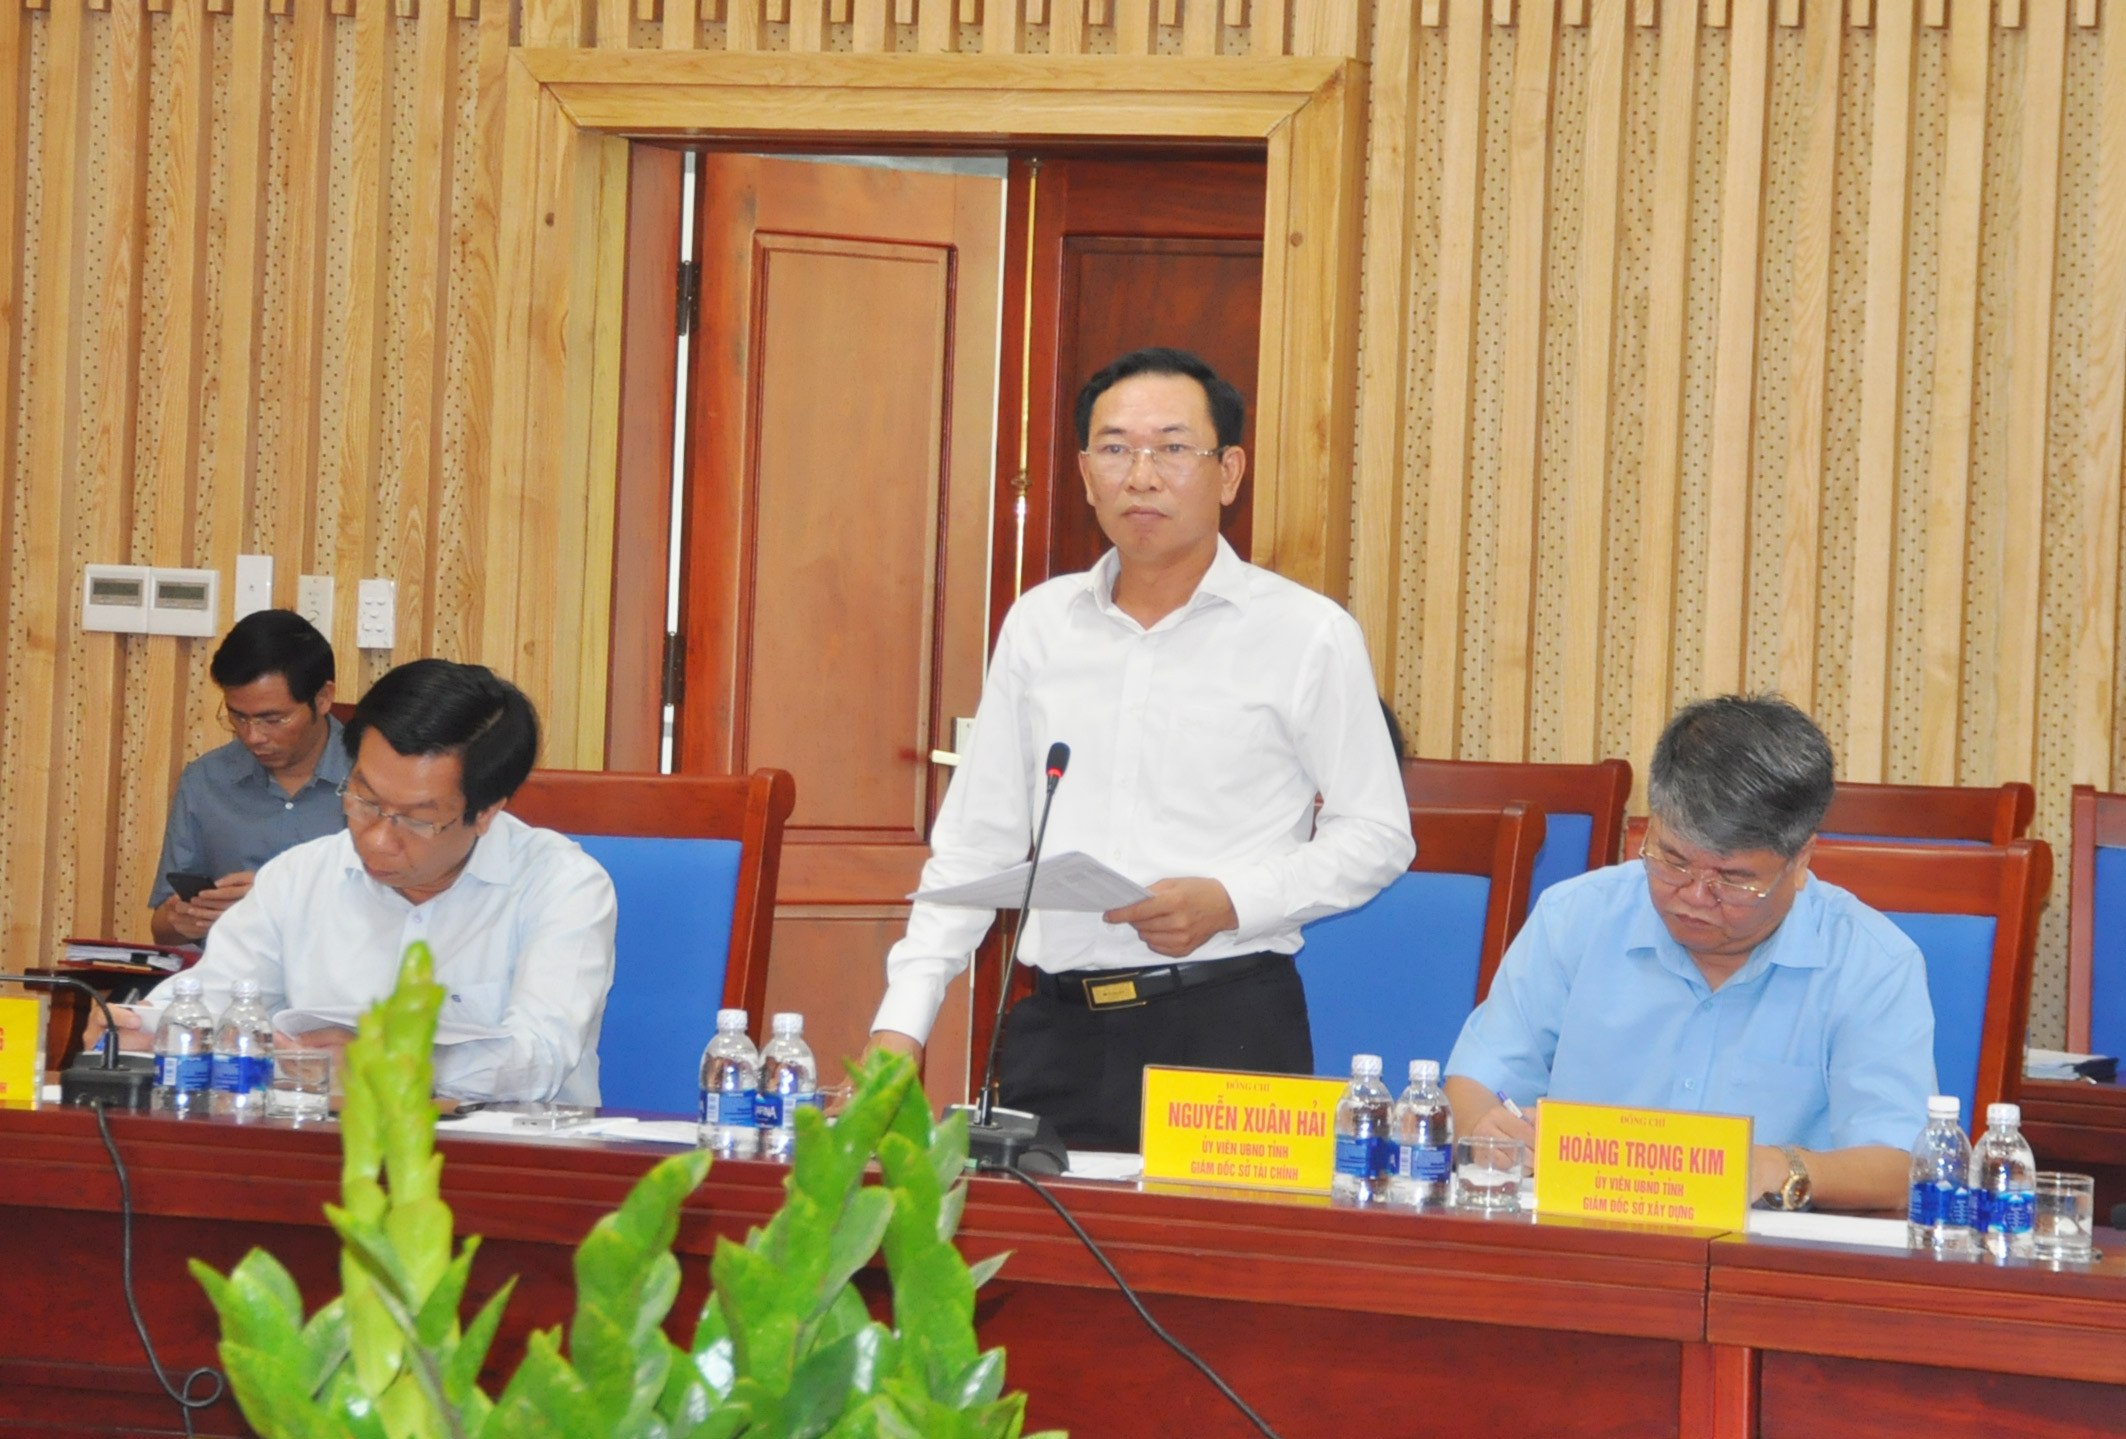 Giám đốc Sở Tài chính Nguyễn Xuân Hải phát biểu cho biết trong quý II/2018 sẽ phấn đầu hoàn thành thu ngân sách theo dự toán  giao. Ảnh: Việt Phương